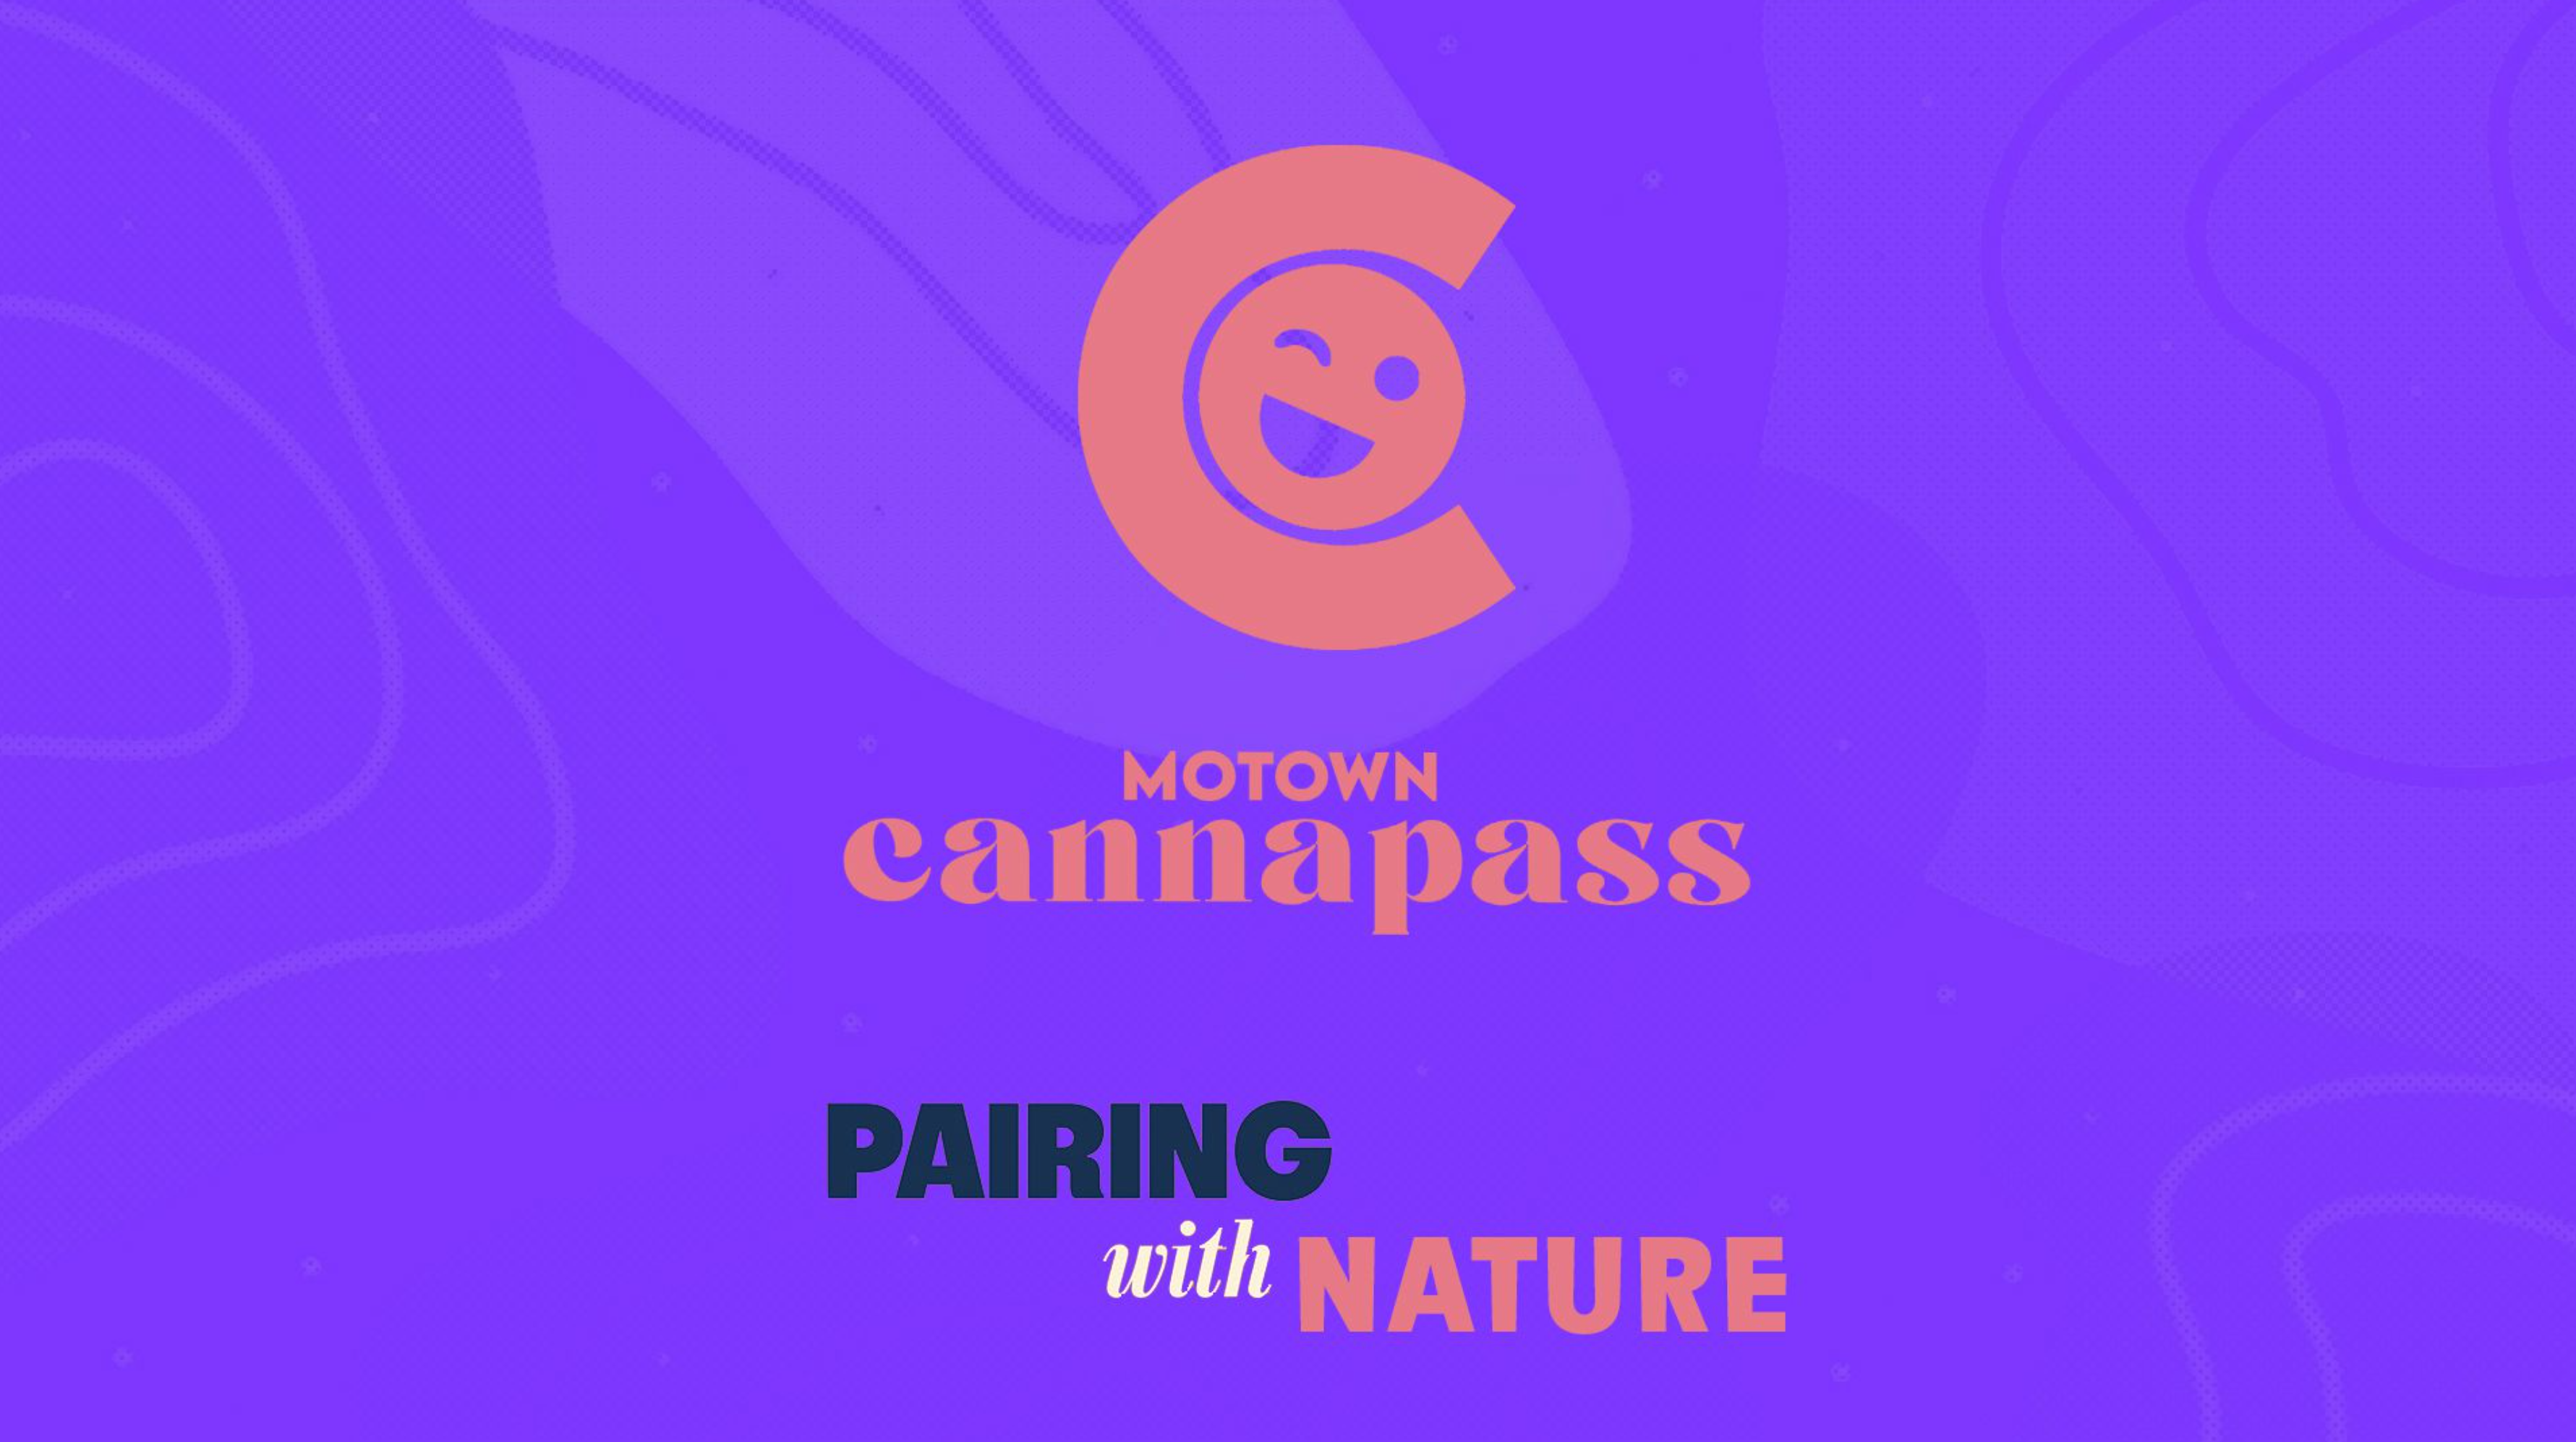 CannaPass MoTown